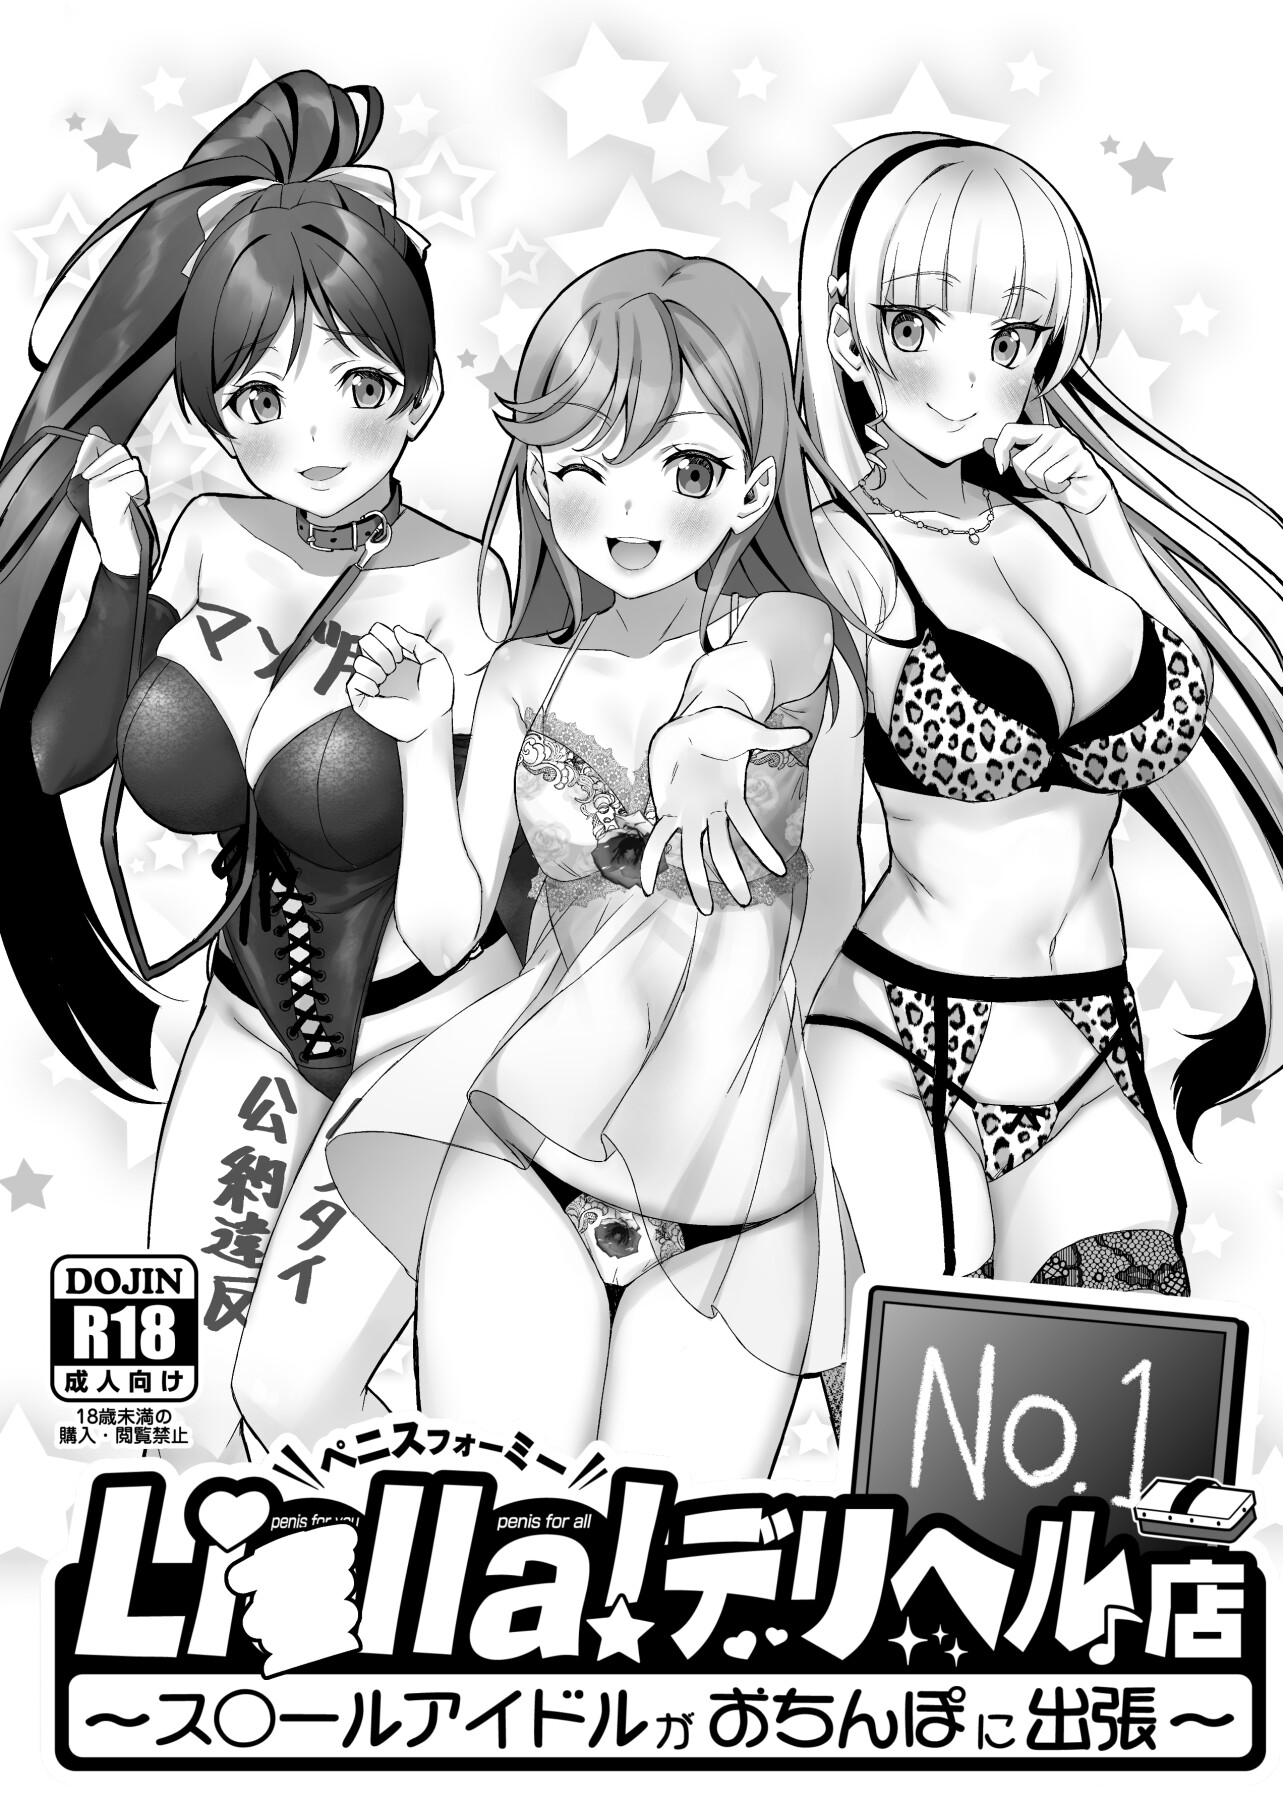 Hentai Manga Comic-Liella! ~School Idols on a Trip in Search of Dick~-Read-1